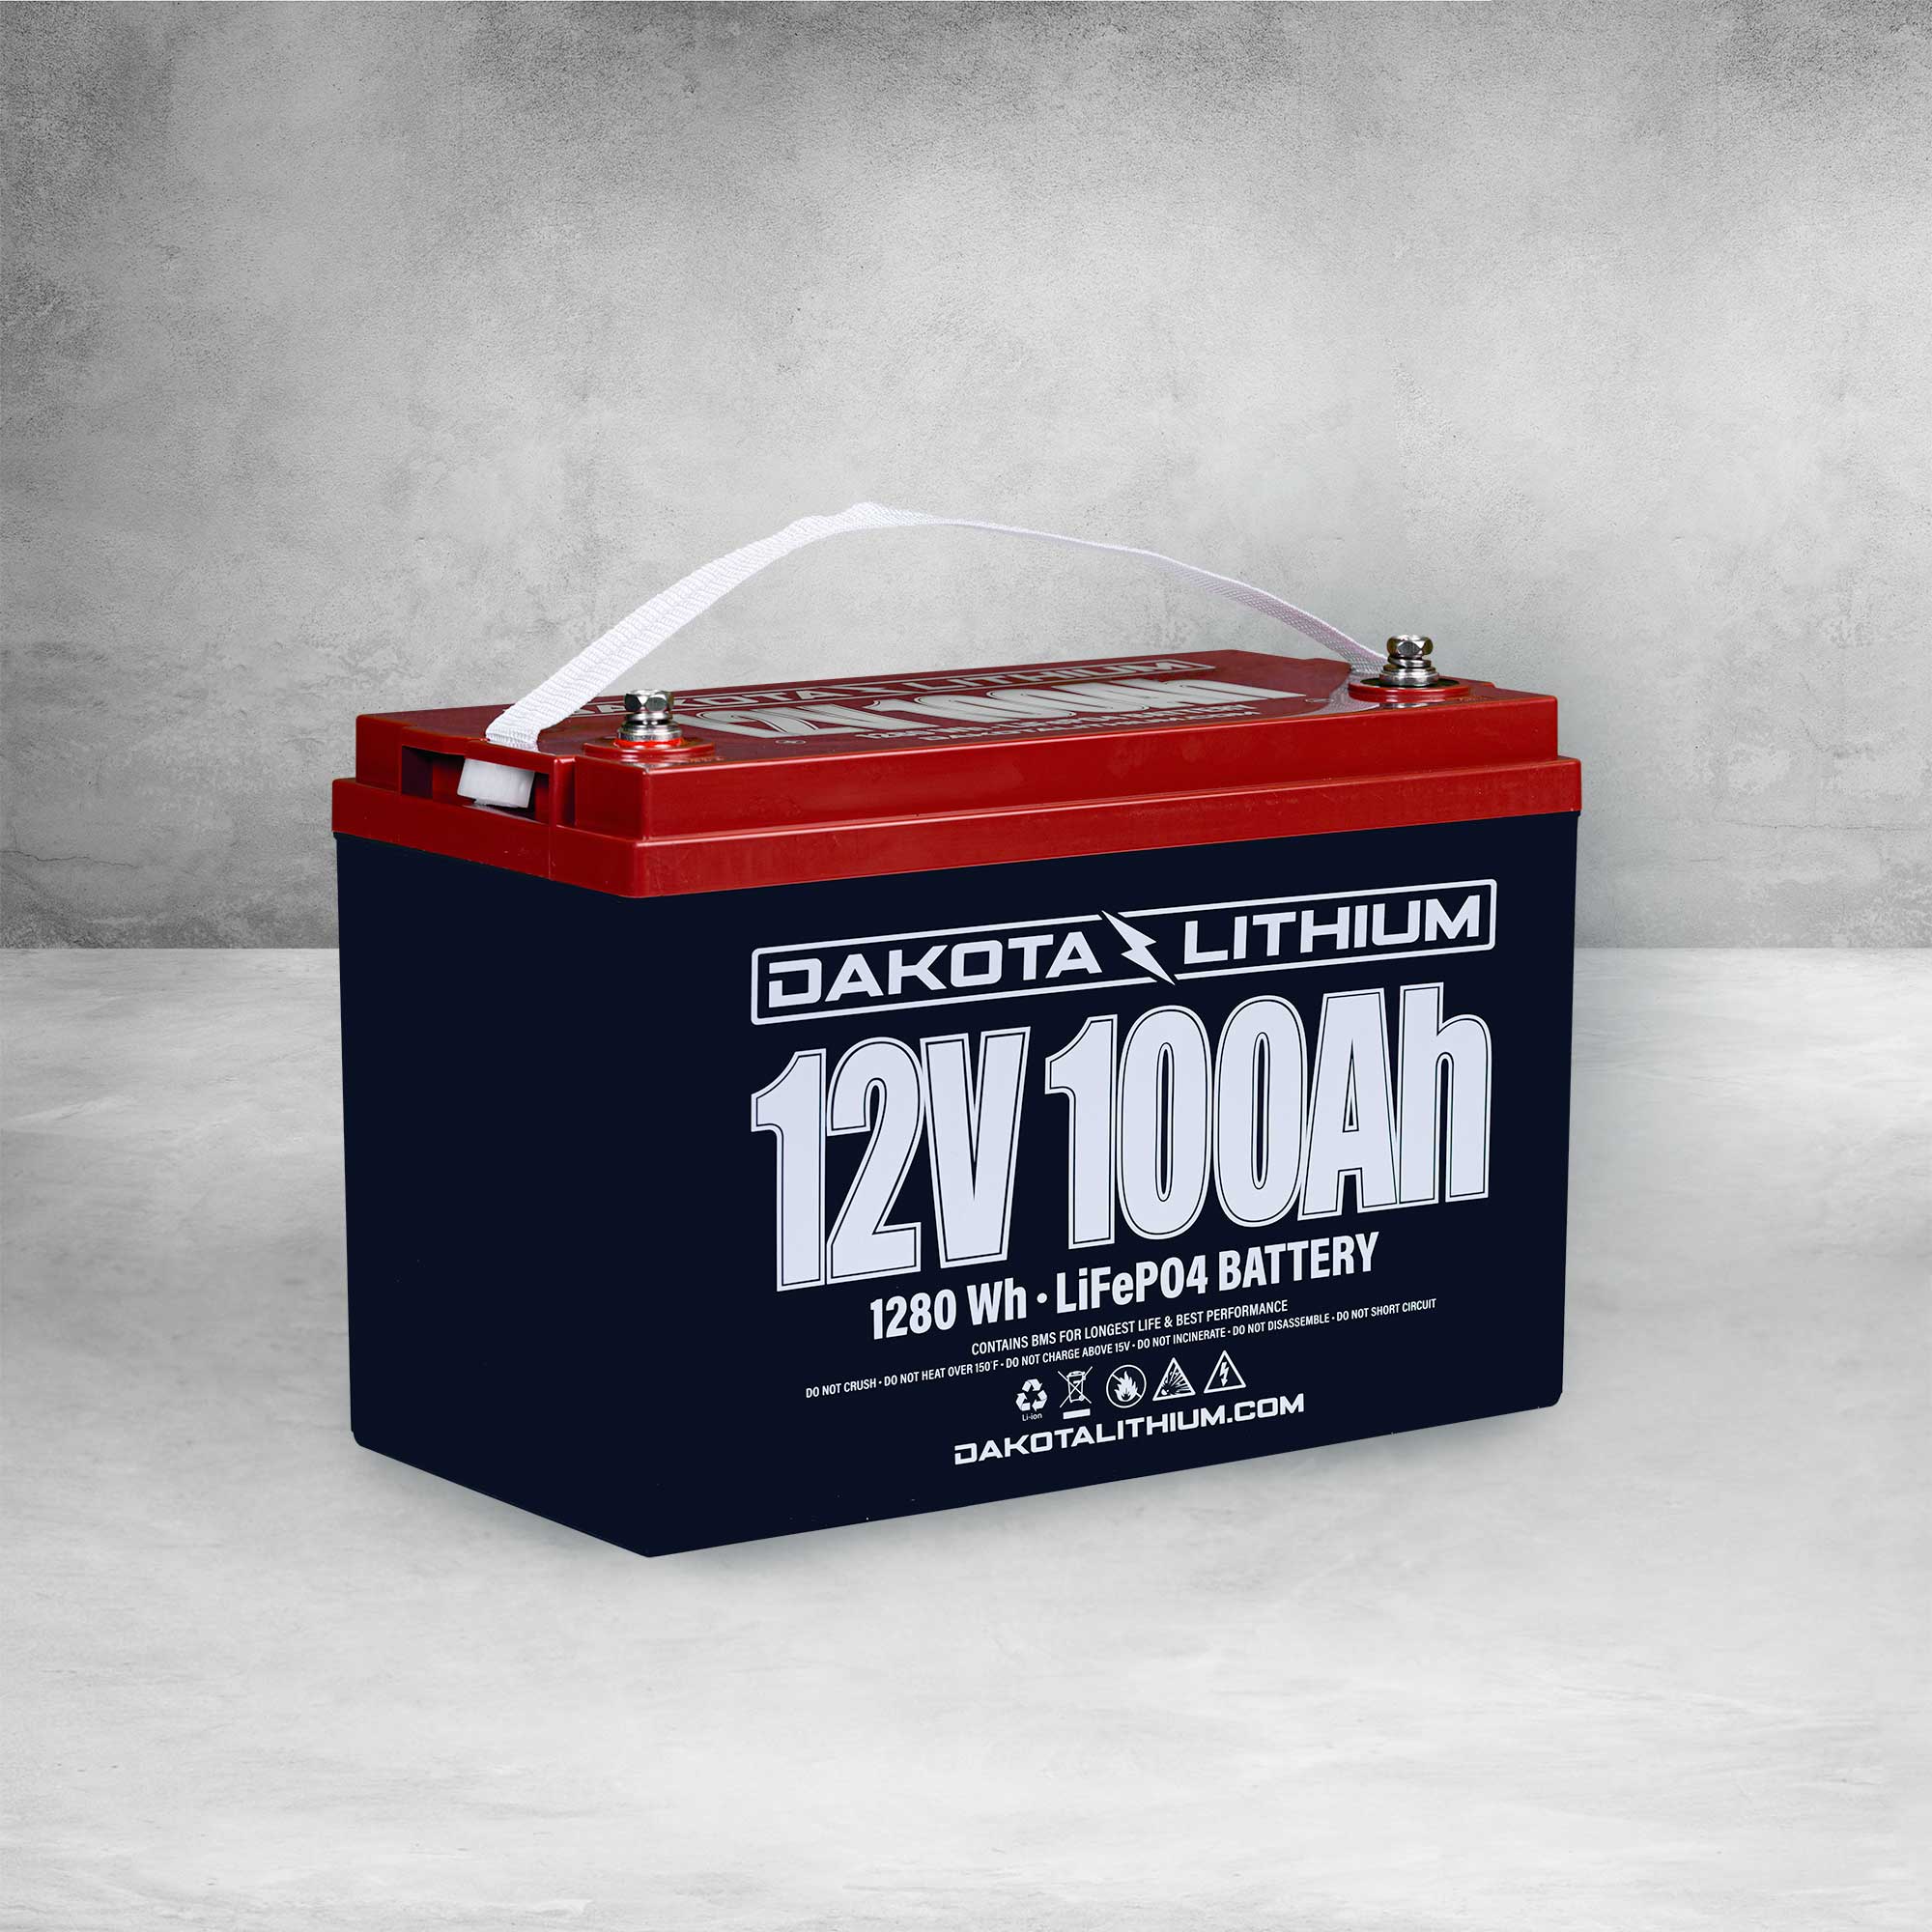 Dakota Lithium 12V 100Ah